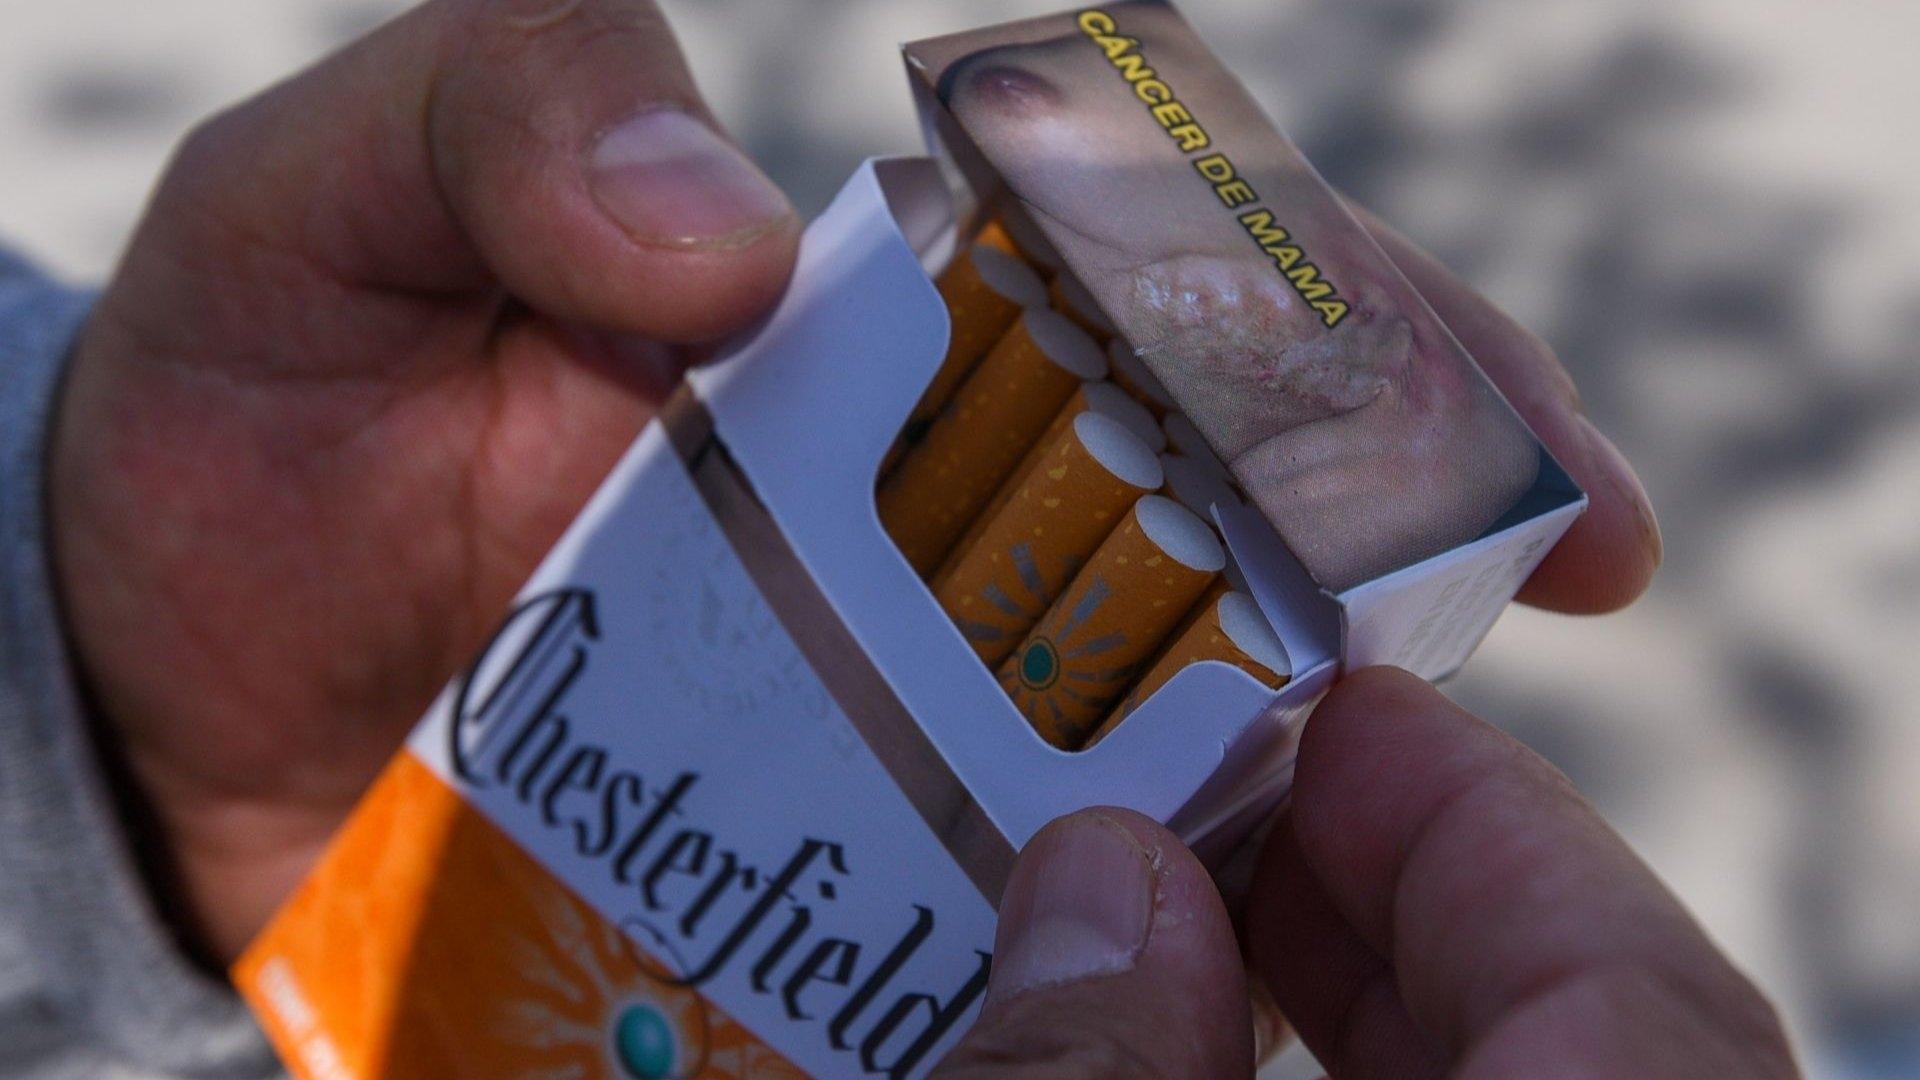 Cajetillas de Cigarros en México Tendrán Nuevas Leyendas sobre Riesgos a la Salud